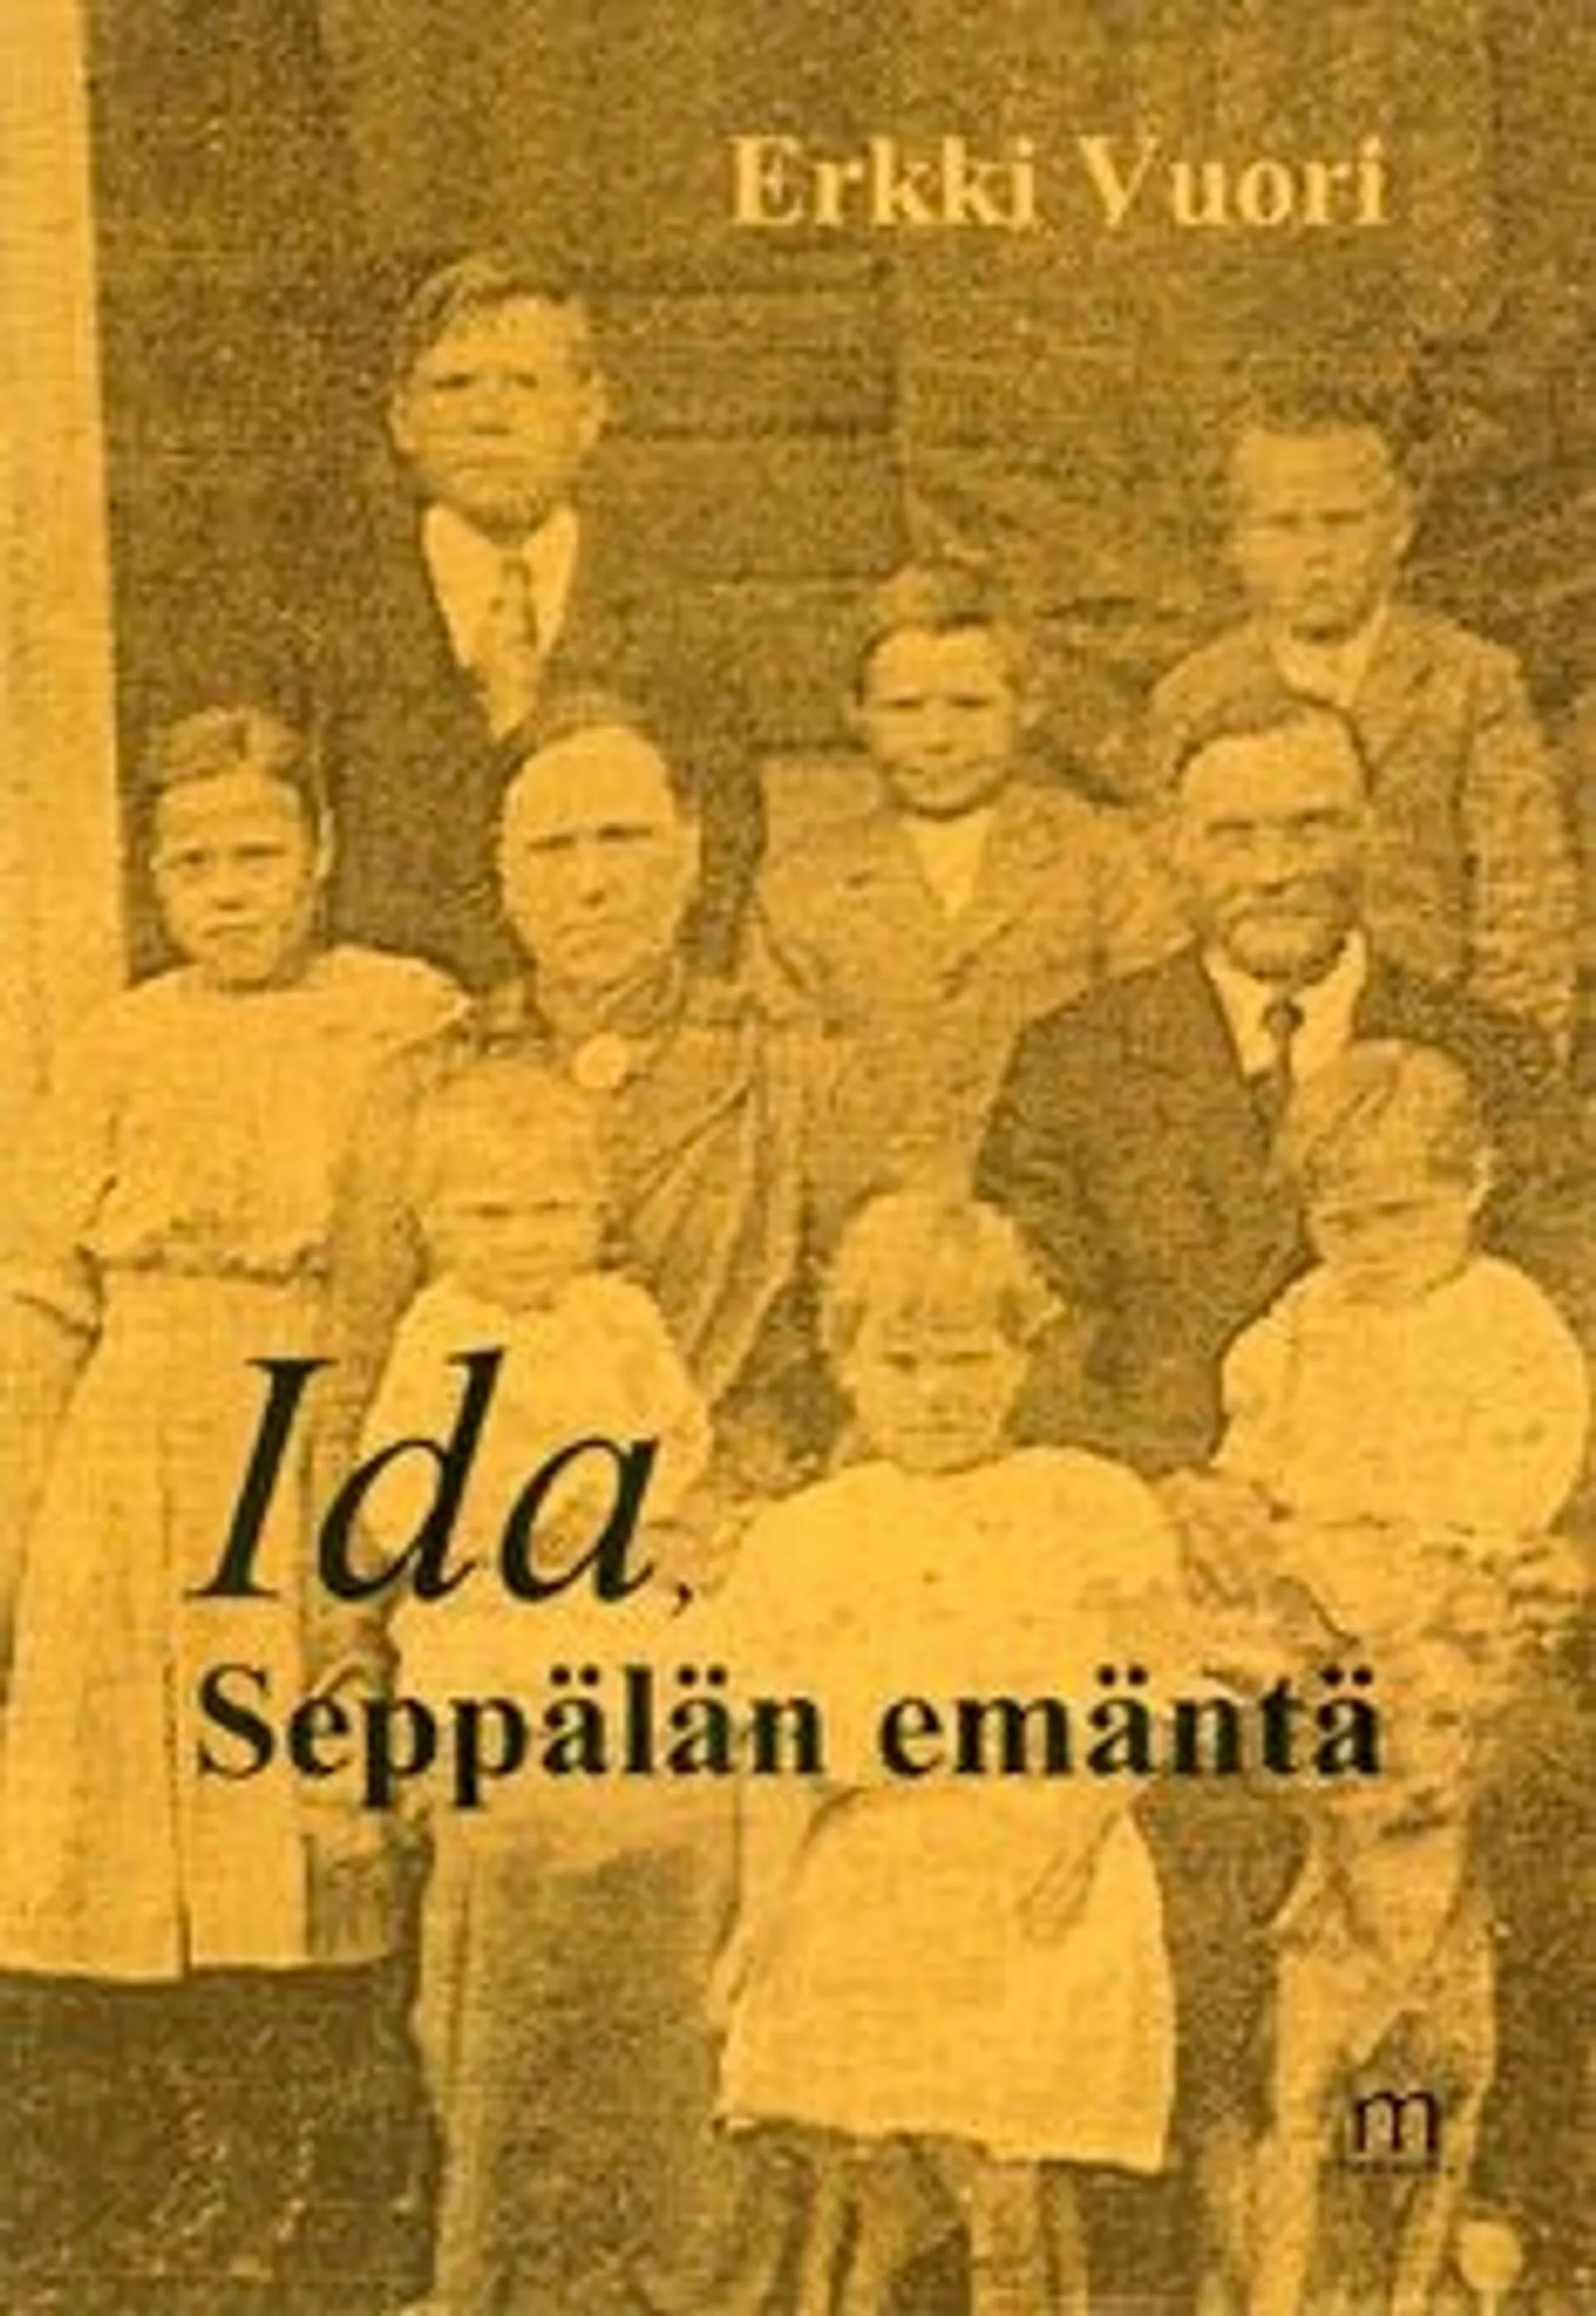 Vuori, Ida, Seppälän emäntä